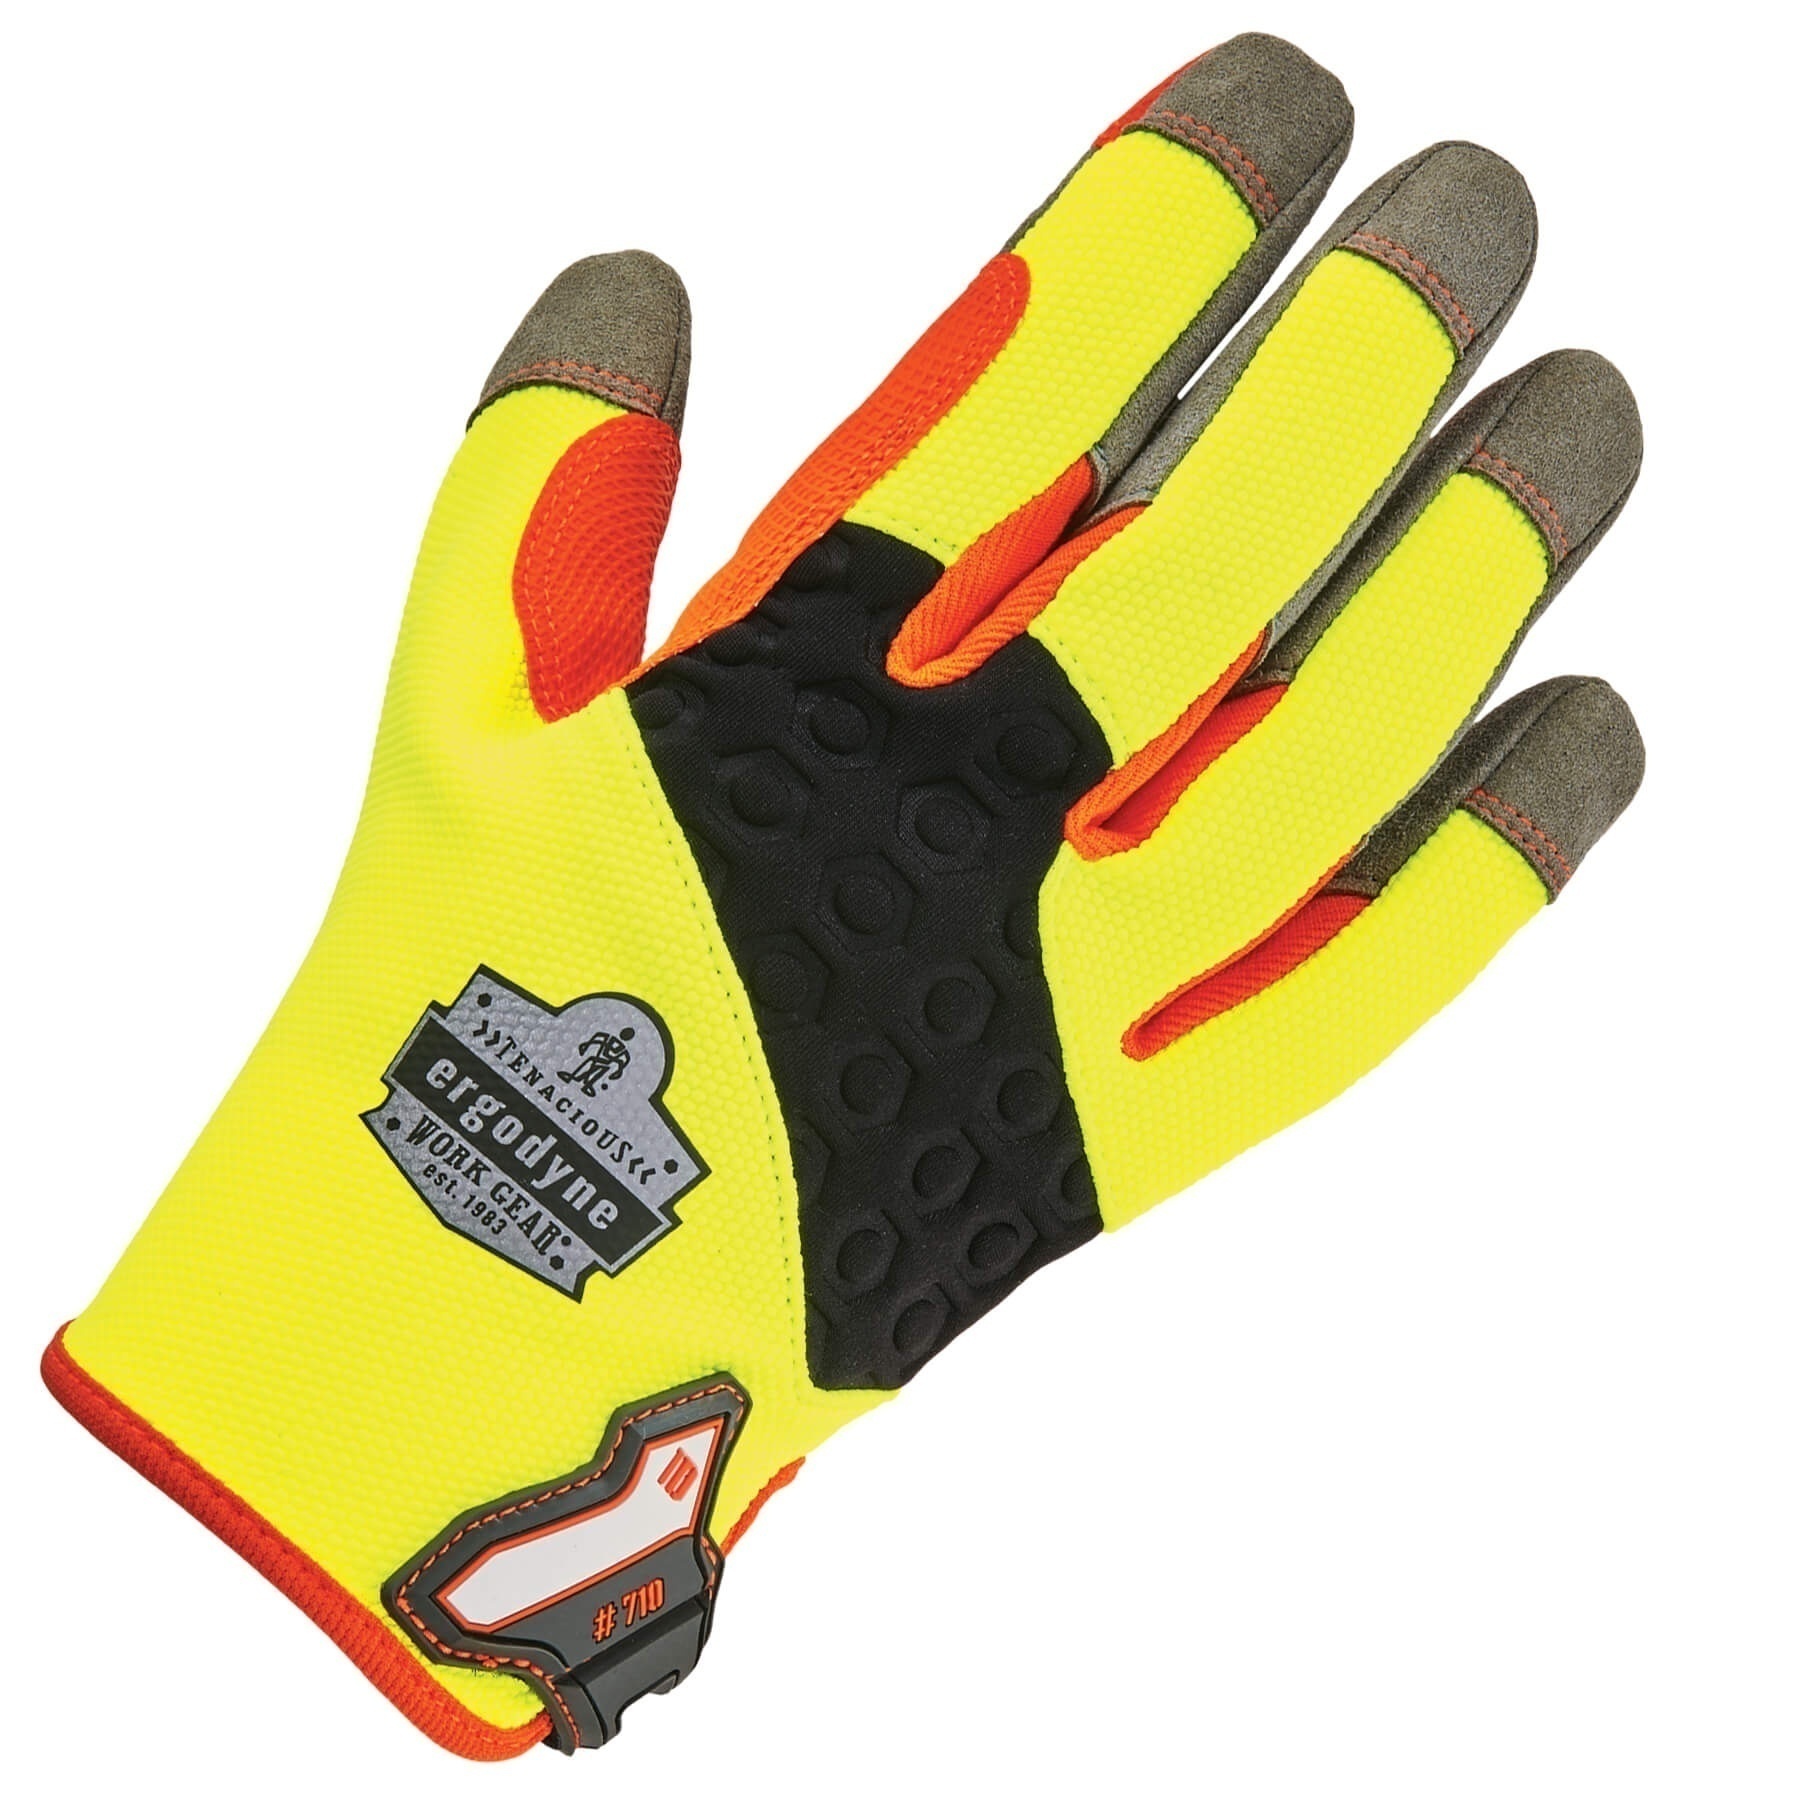 Ergodyne ProFlex 710 Heavy-Duty Utility Gloves from Columbia Safety